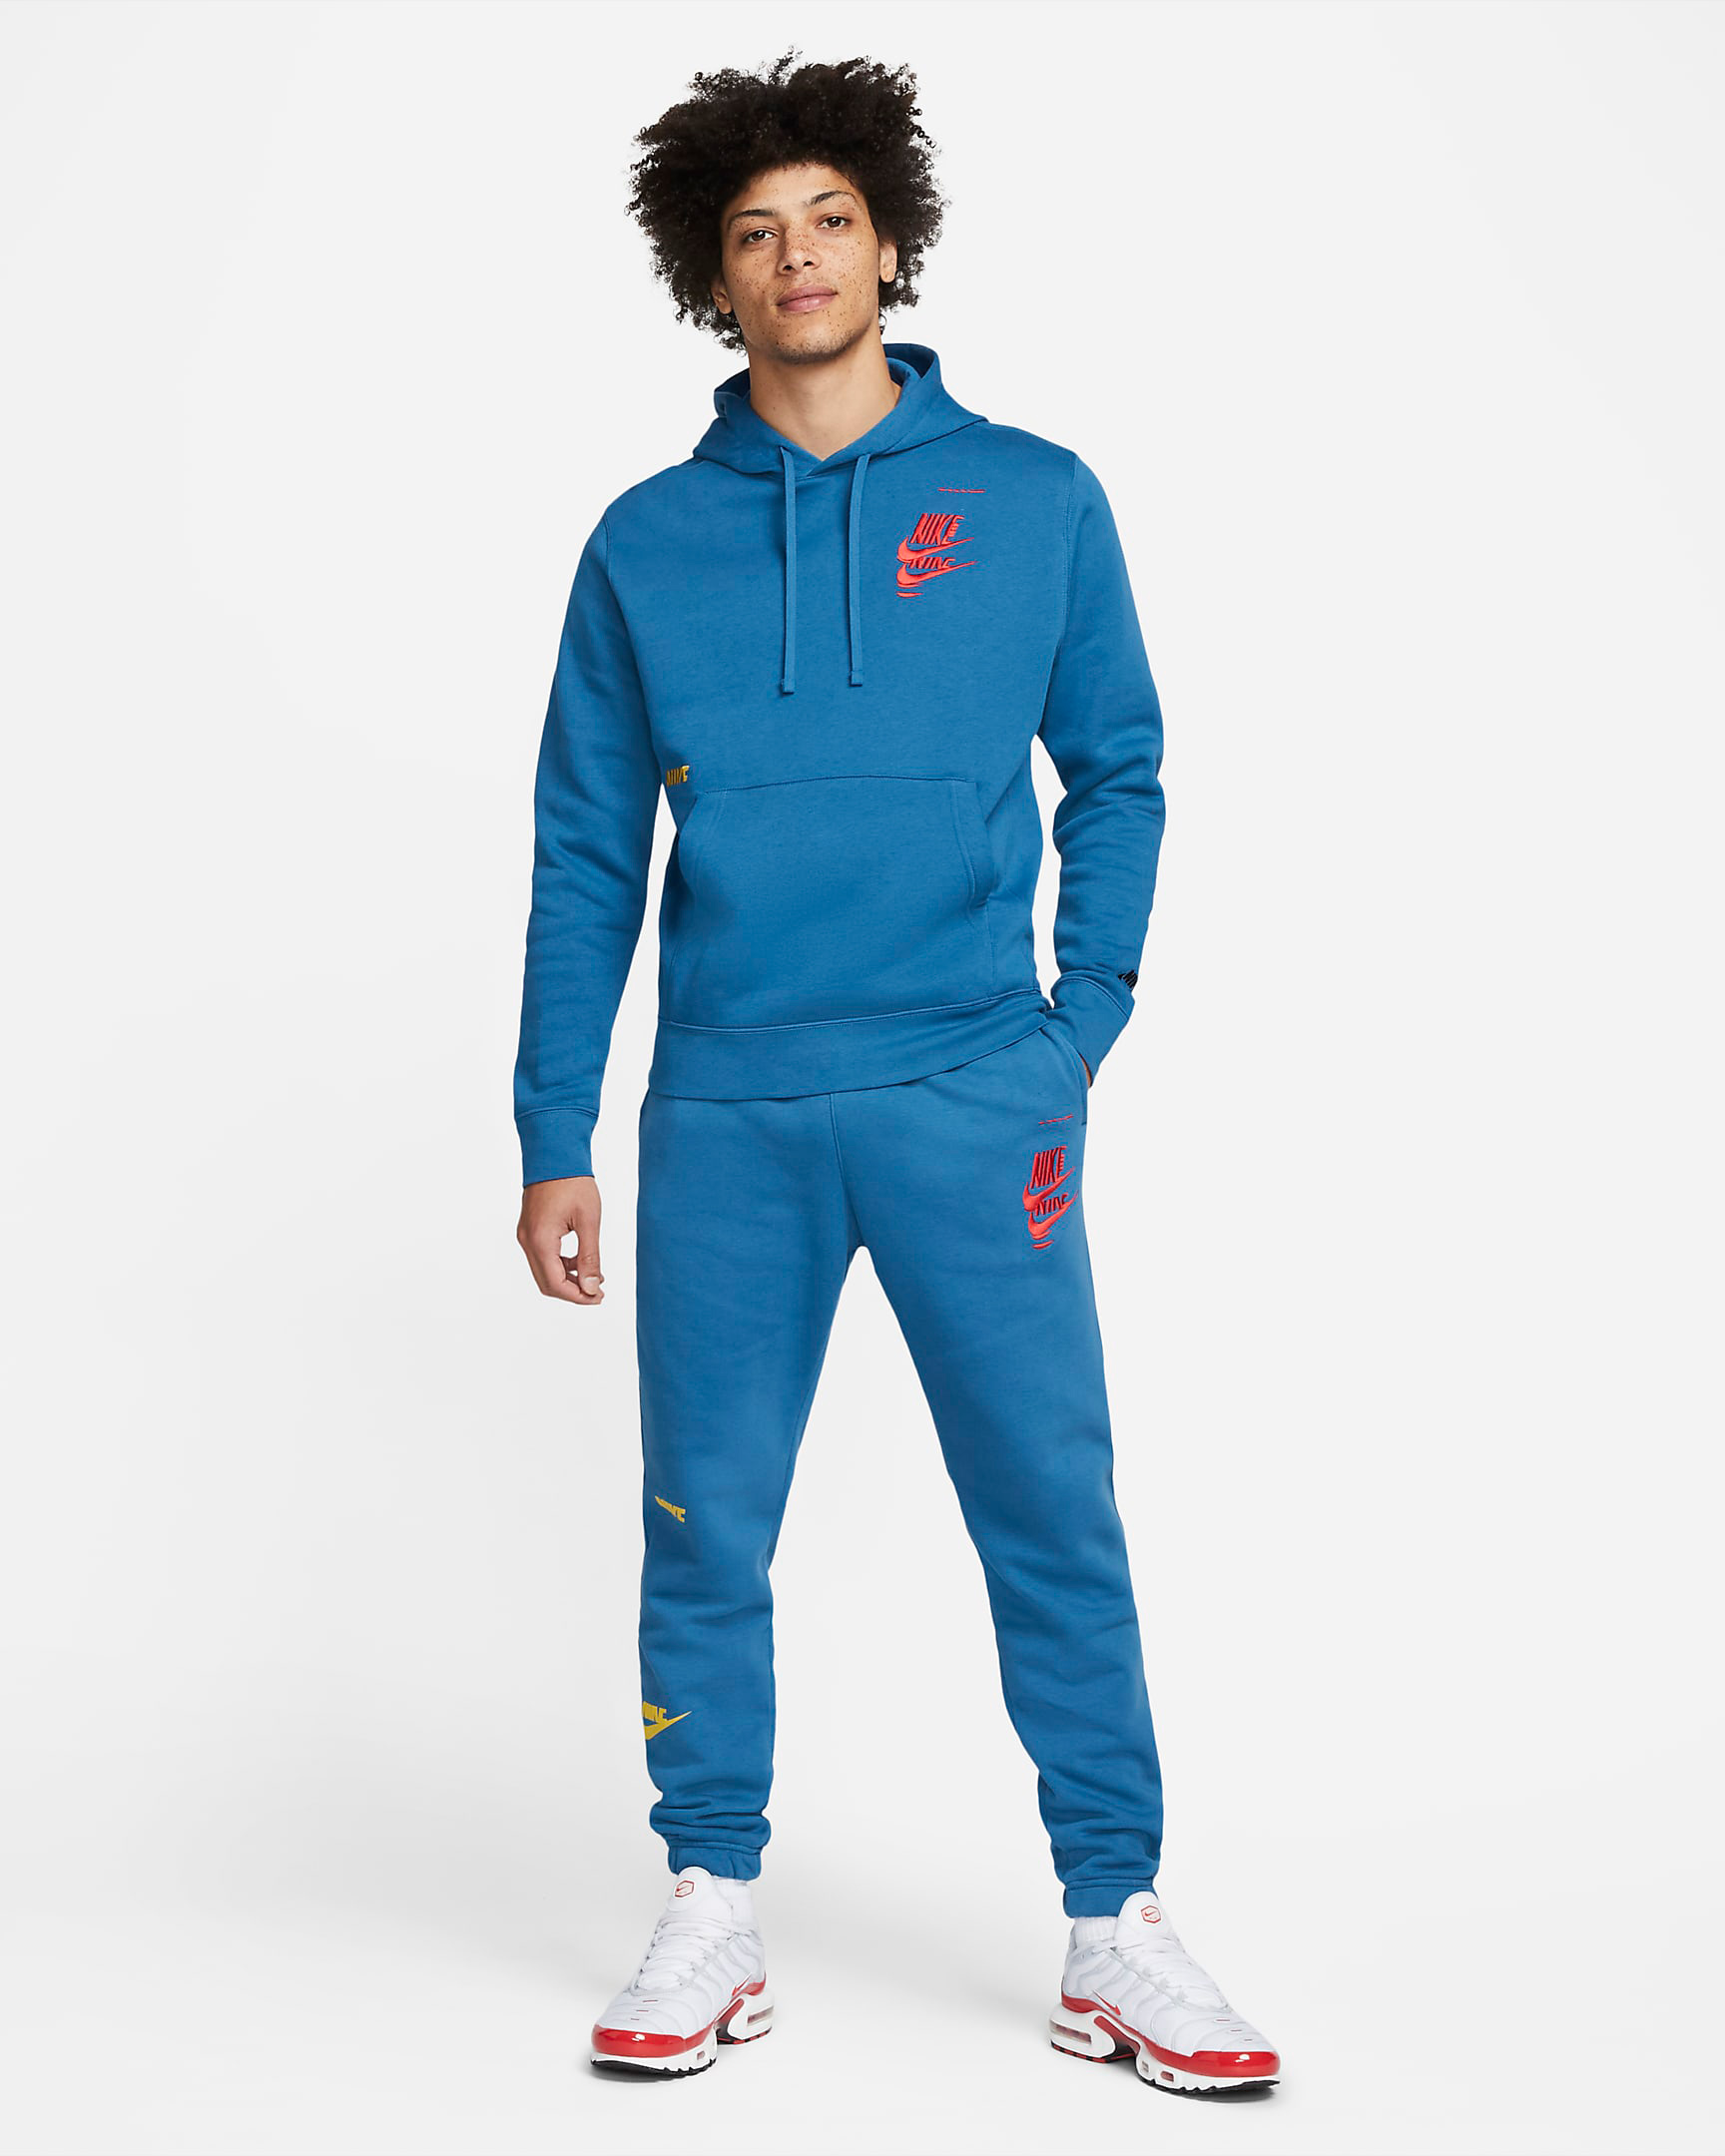 nike-dark-marina-blue-sport-essentials-hoodie-pants-outfit